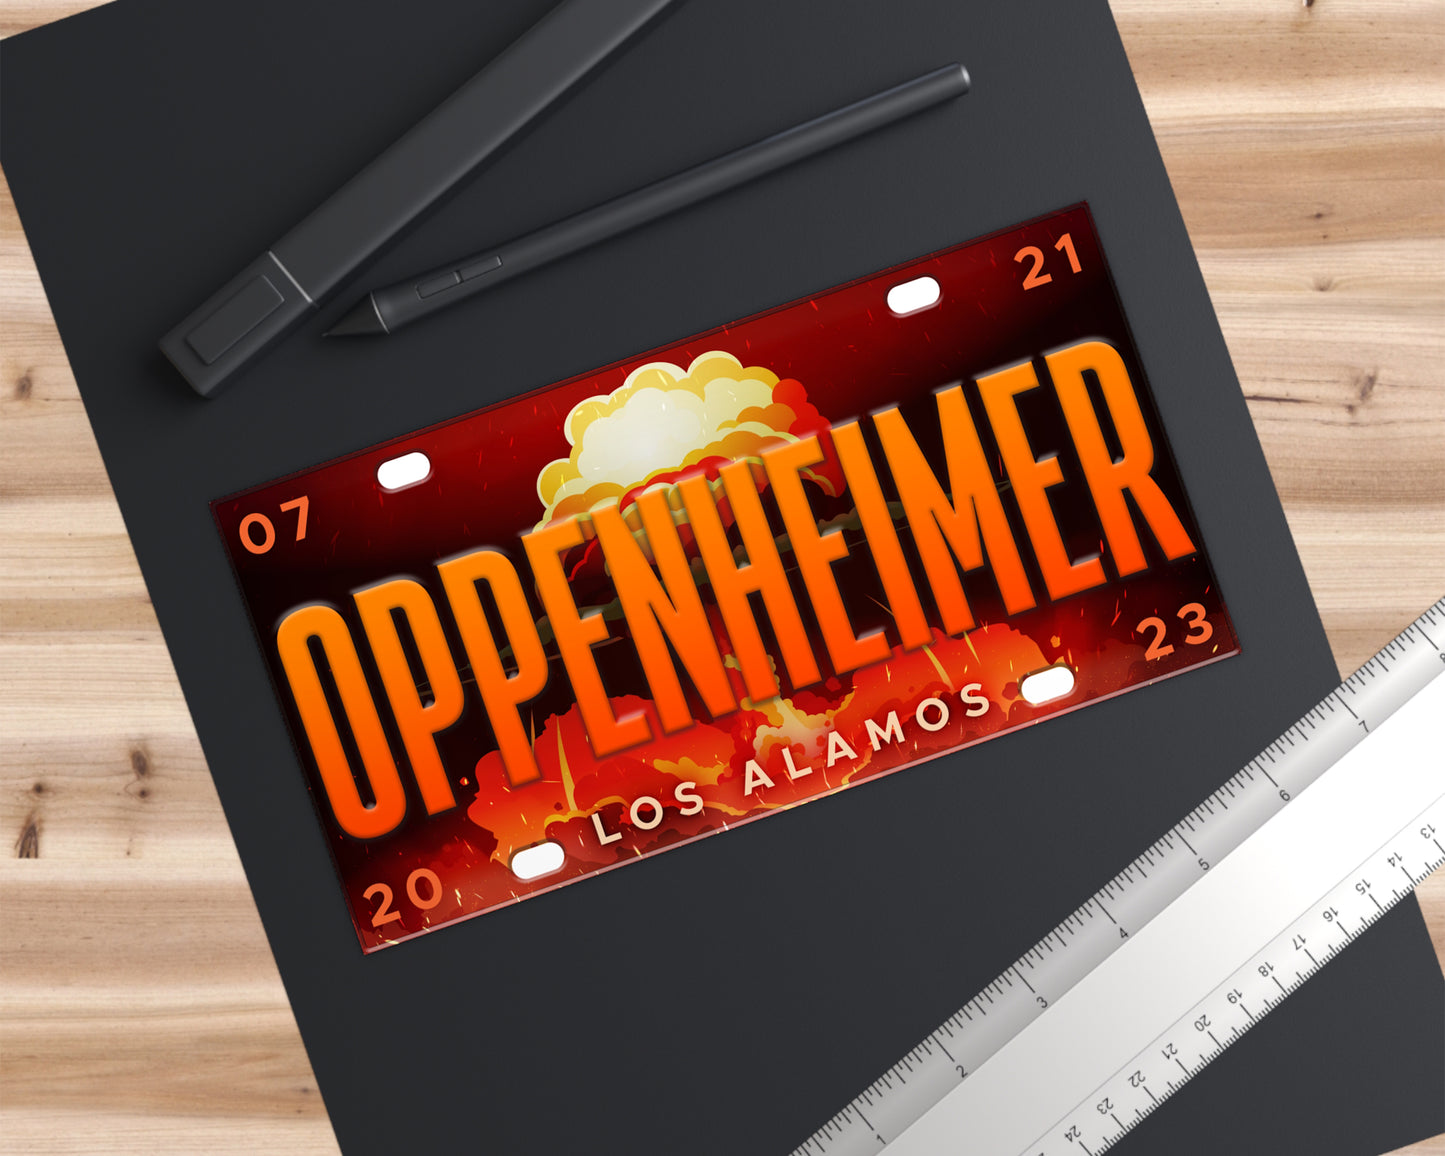 Oppenheimer (2023) movie bumper sticker